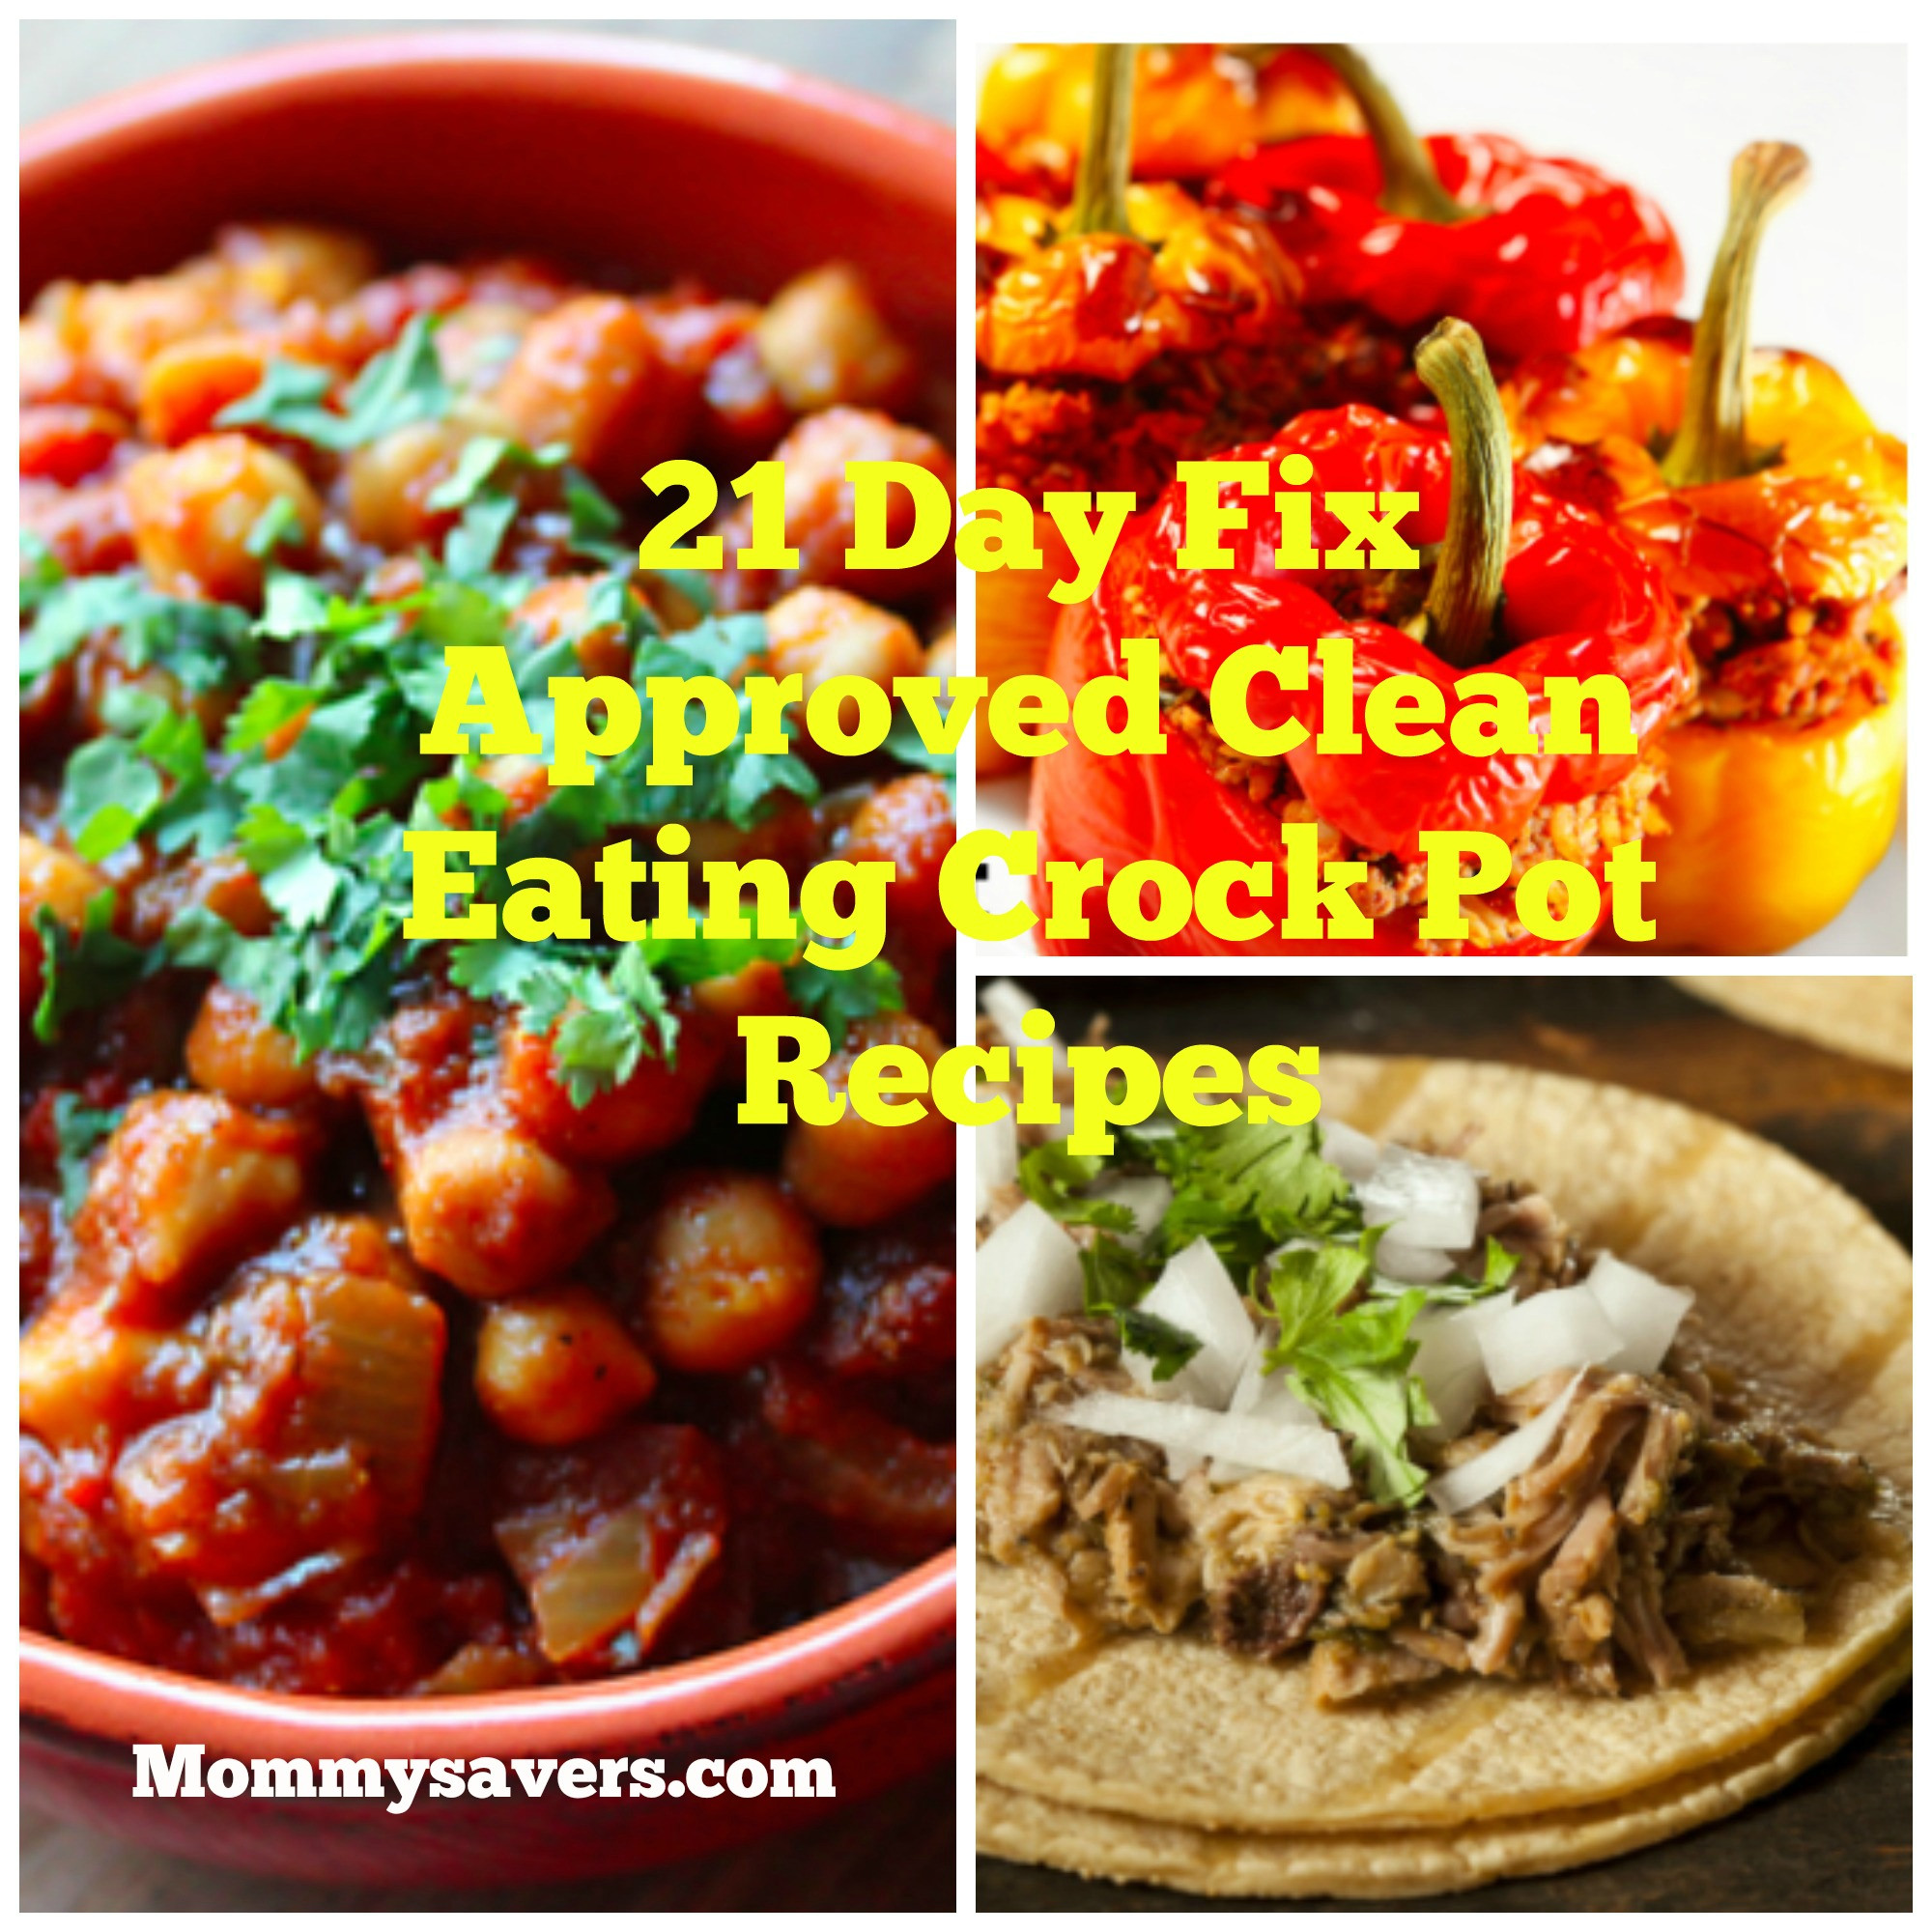 Clean Eating Crock Pot Recipes
 21 Day Fix Approved Clean Eating Crock Pot Recipes